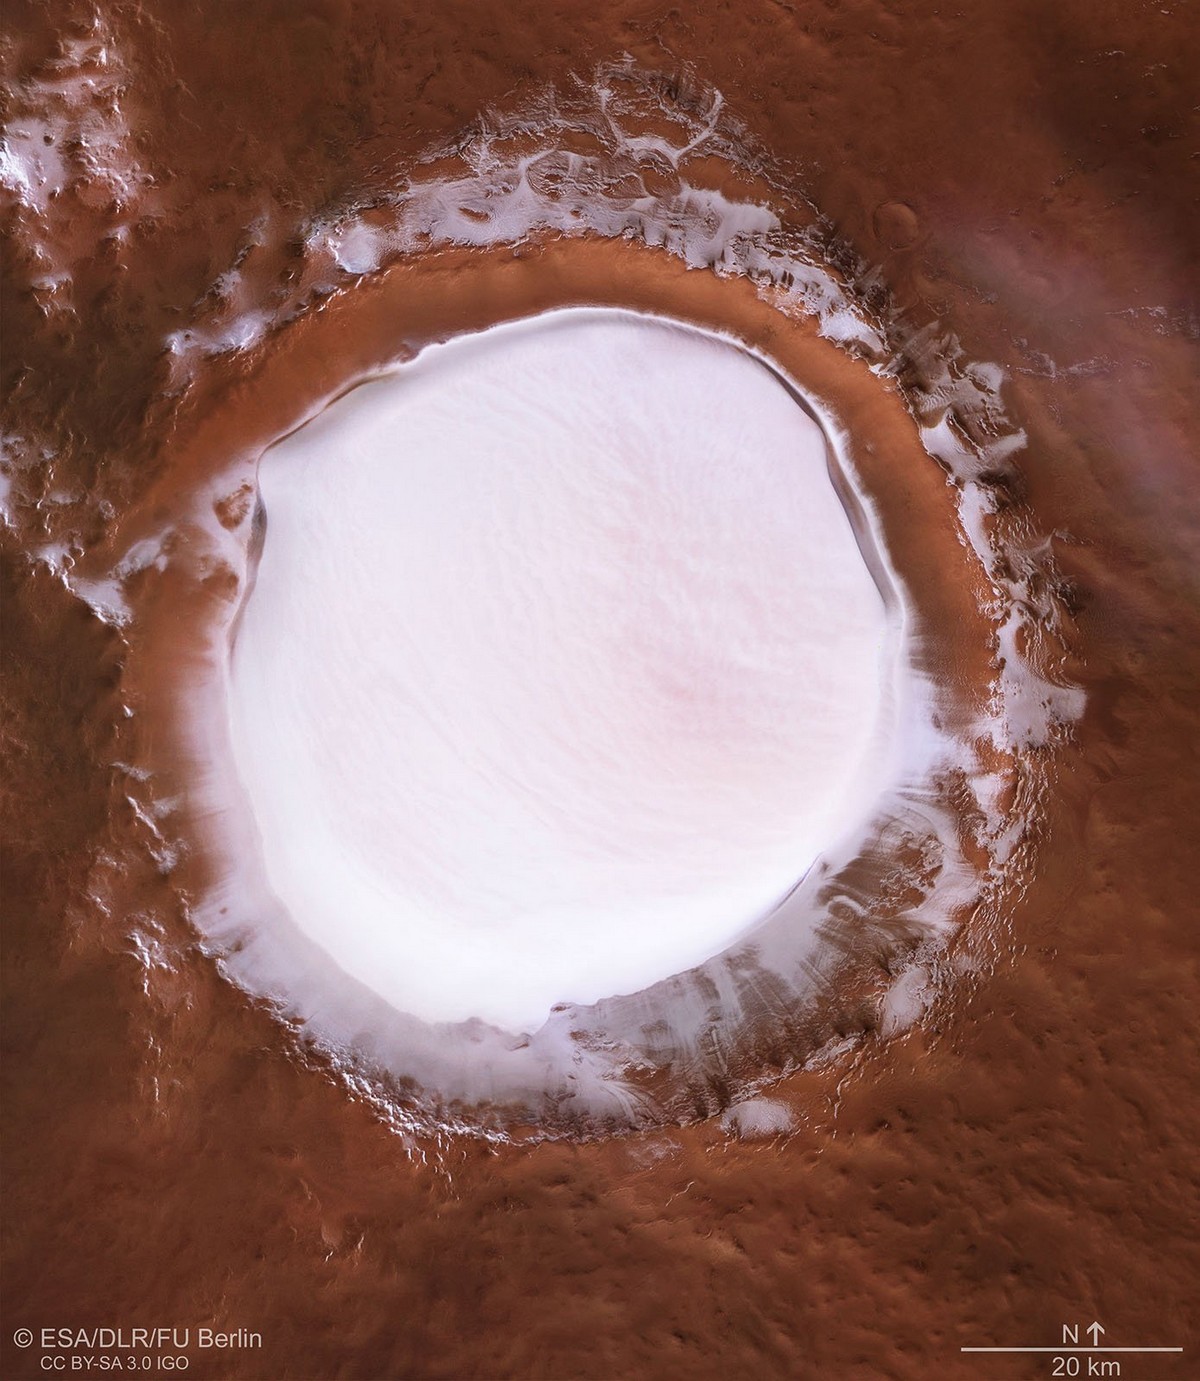 Водяной лёд на Марсе в новых фотографиях ЕКА 2